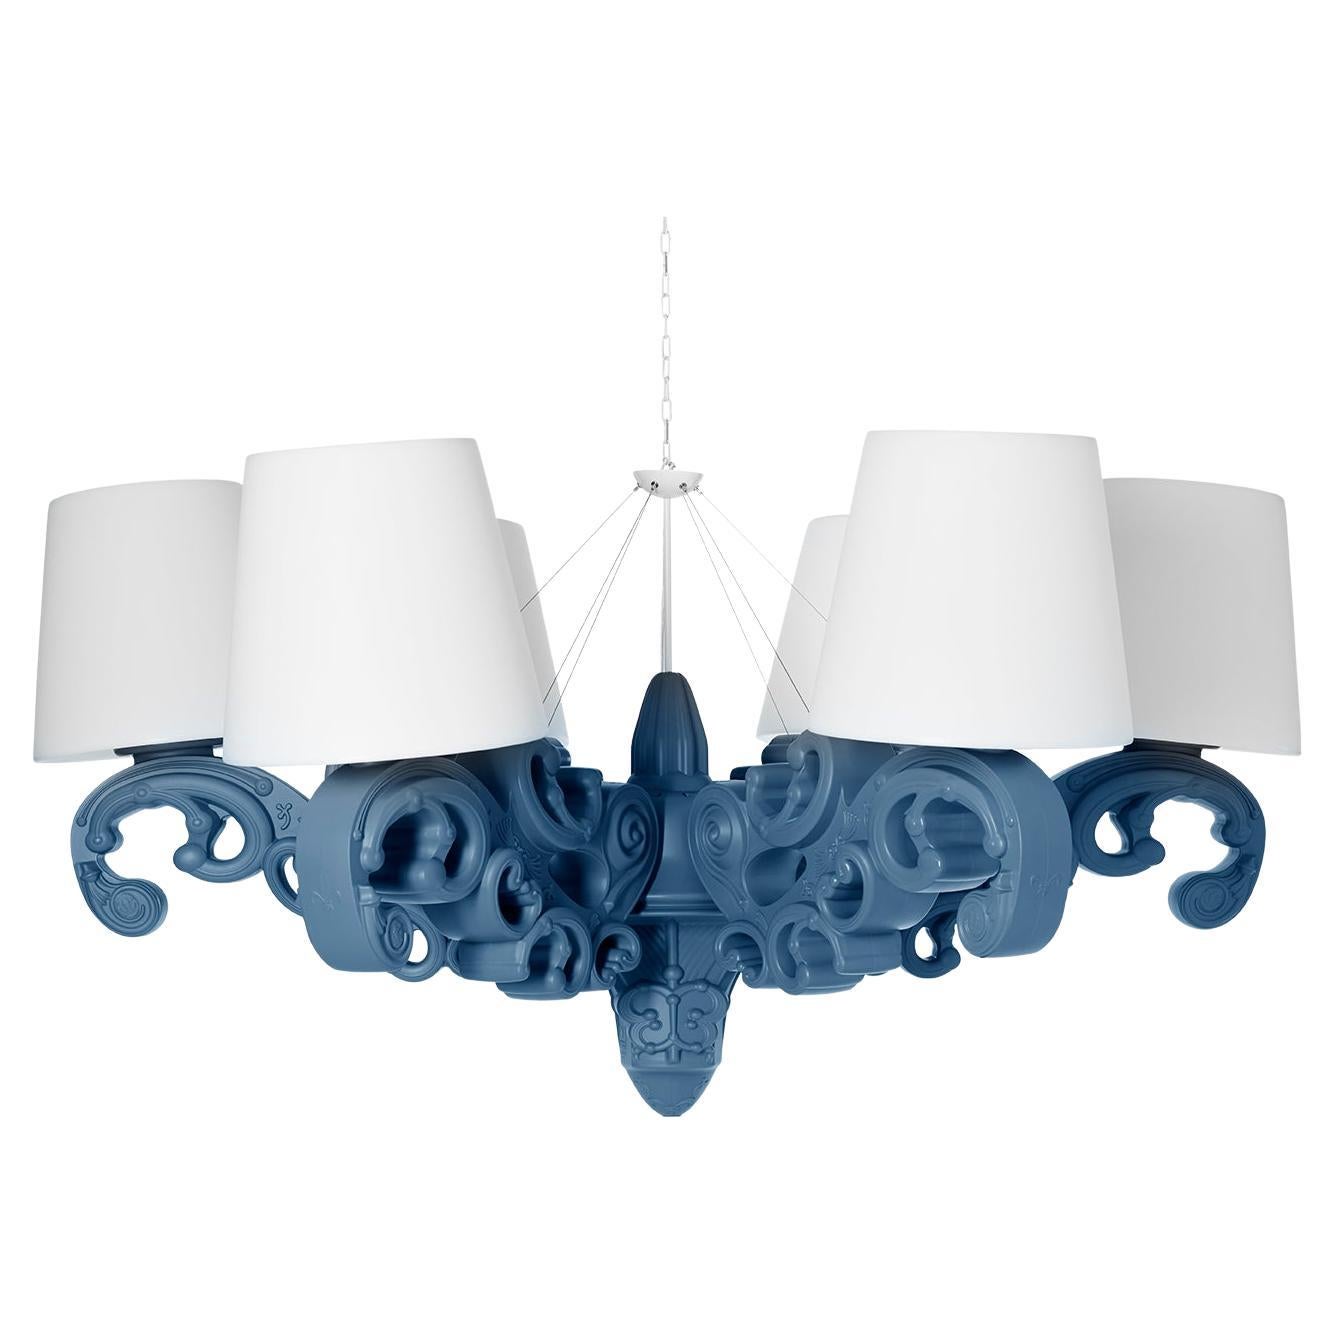 Lampe à suspension couronne d'amour en bleu poudré au design coulissant de Moro, Pigatti